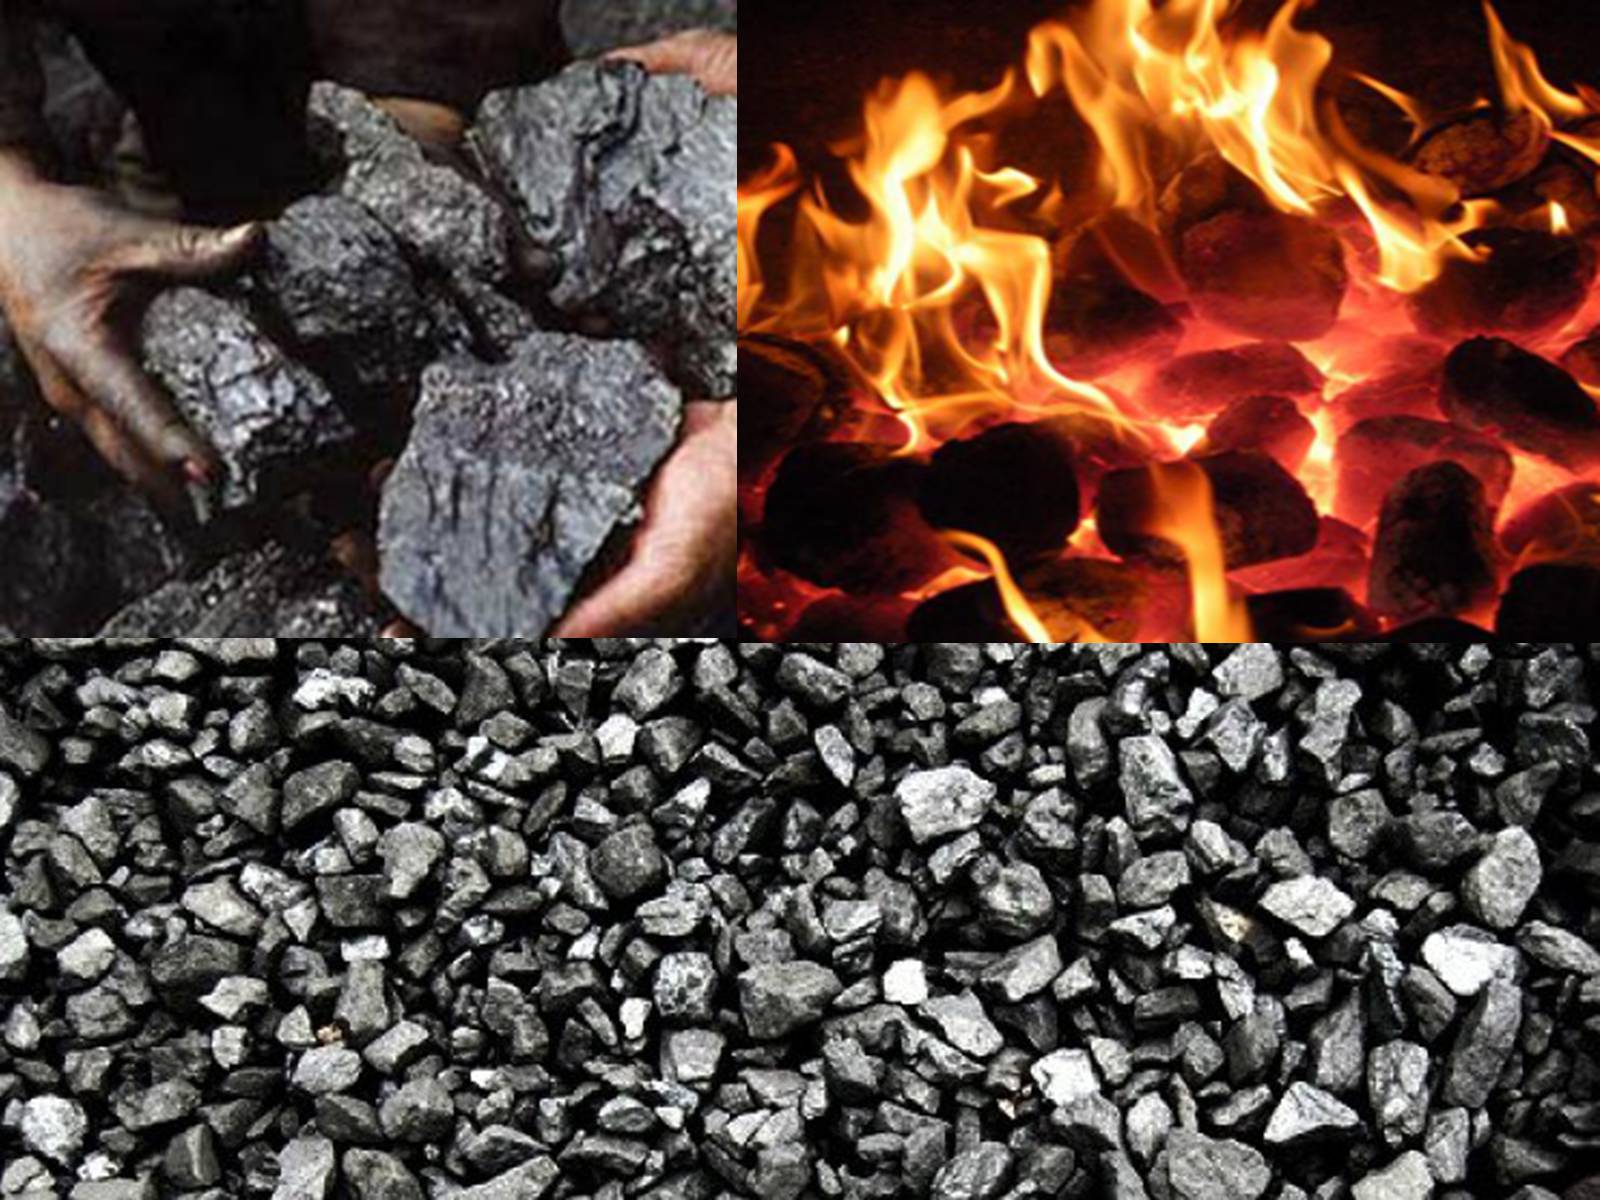 Газ горючее полезное ископаемое. Горючие (уголь, торф, нефть, природный ГАЗ, горючие сланцы). Нефть ГАЗ уголь. Каменный уголь. Уголь и нефть.